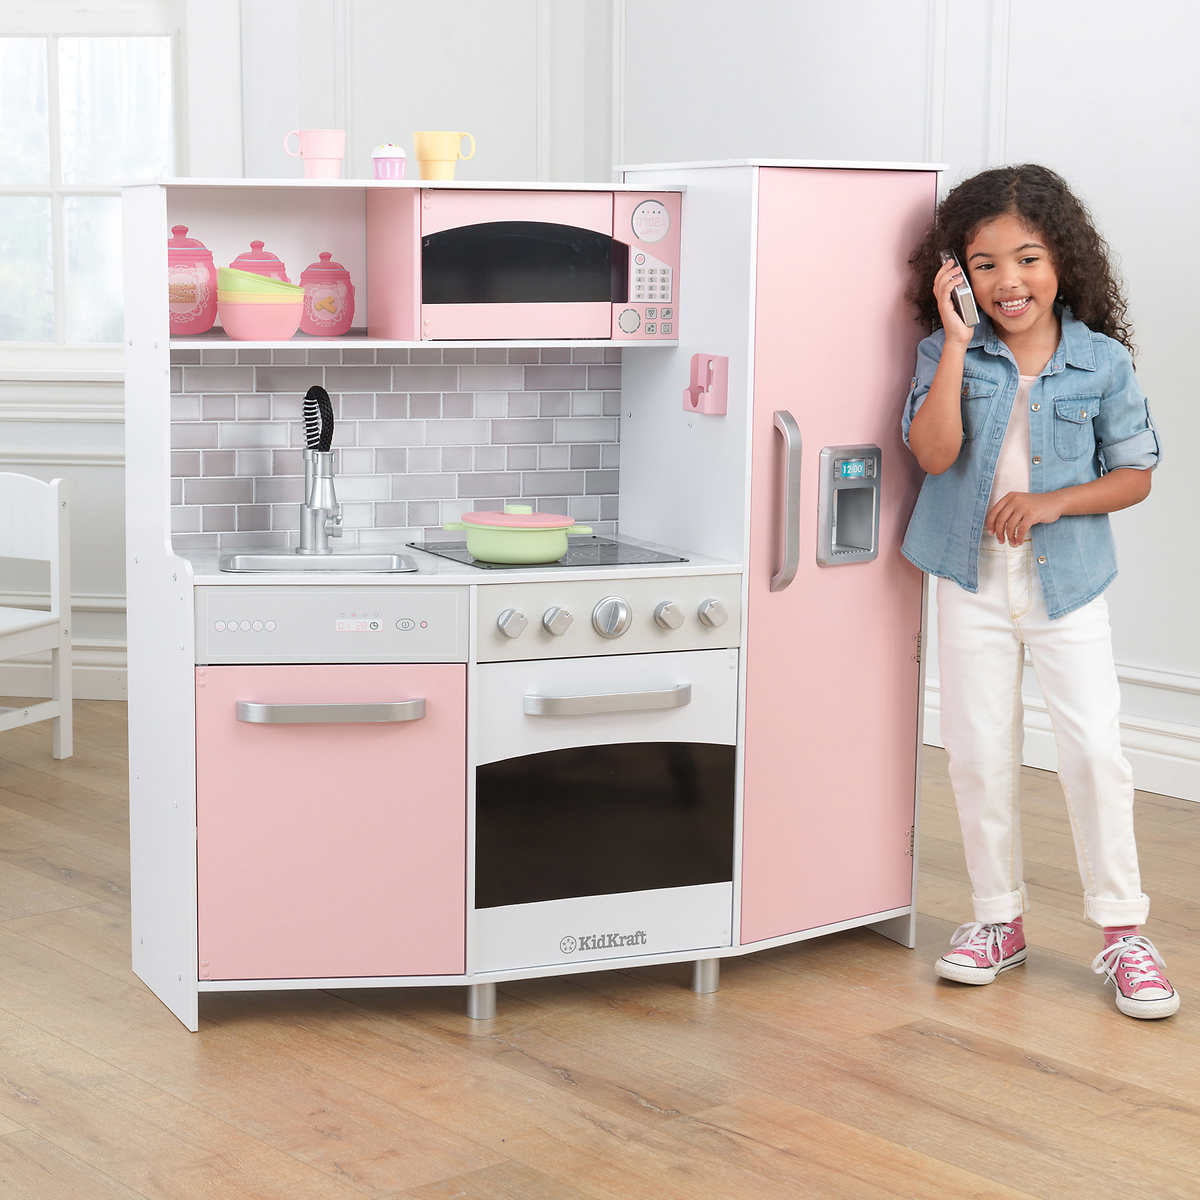 KidKraft Large Play Kitchen - Pink 